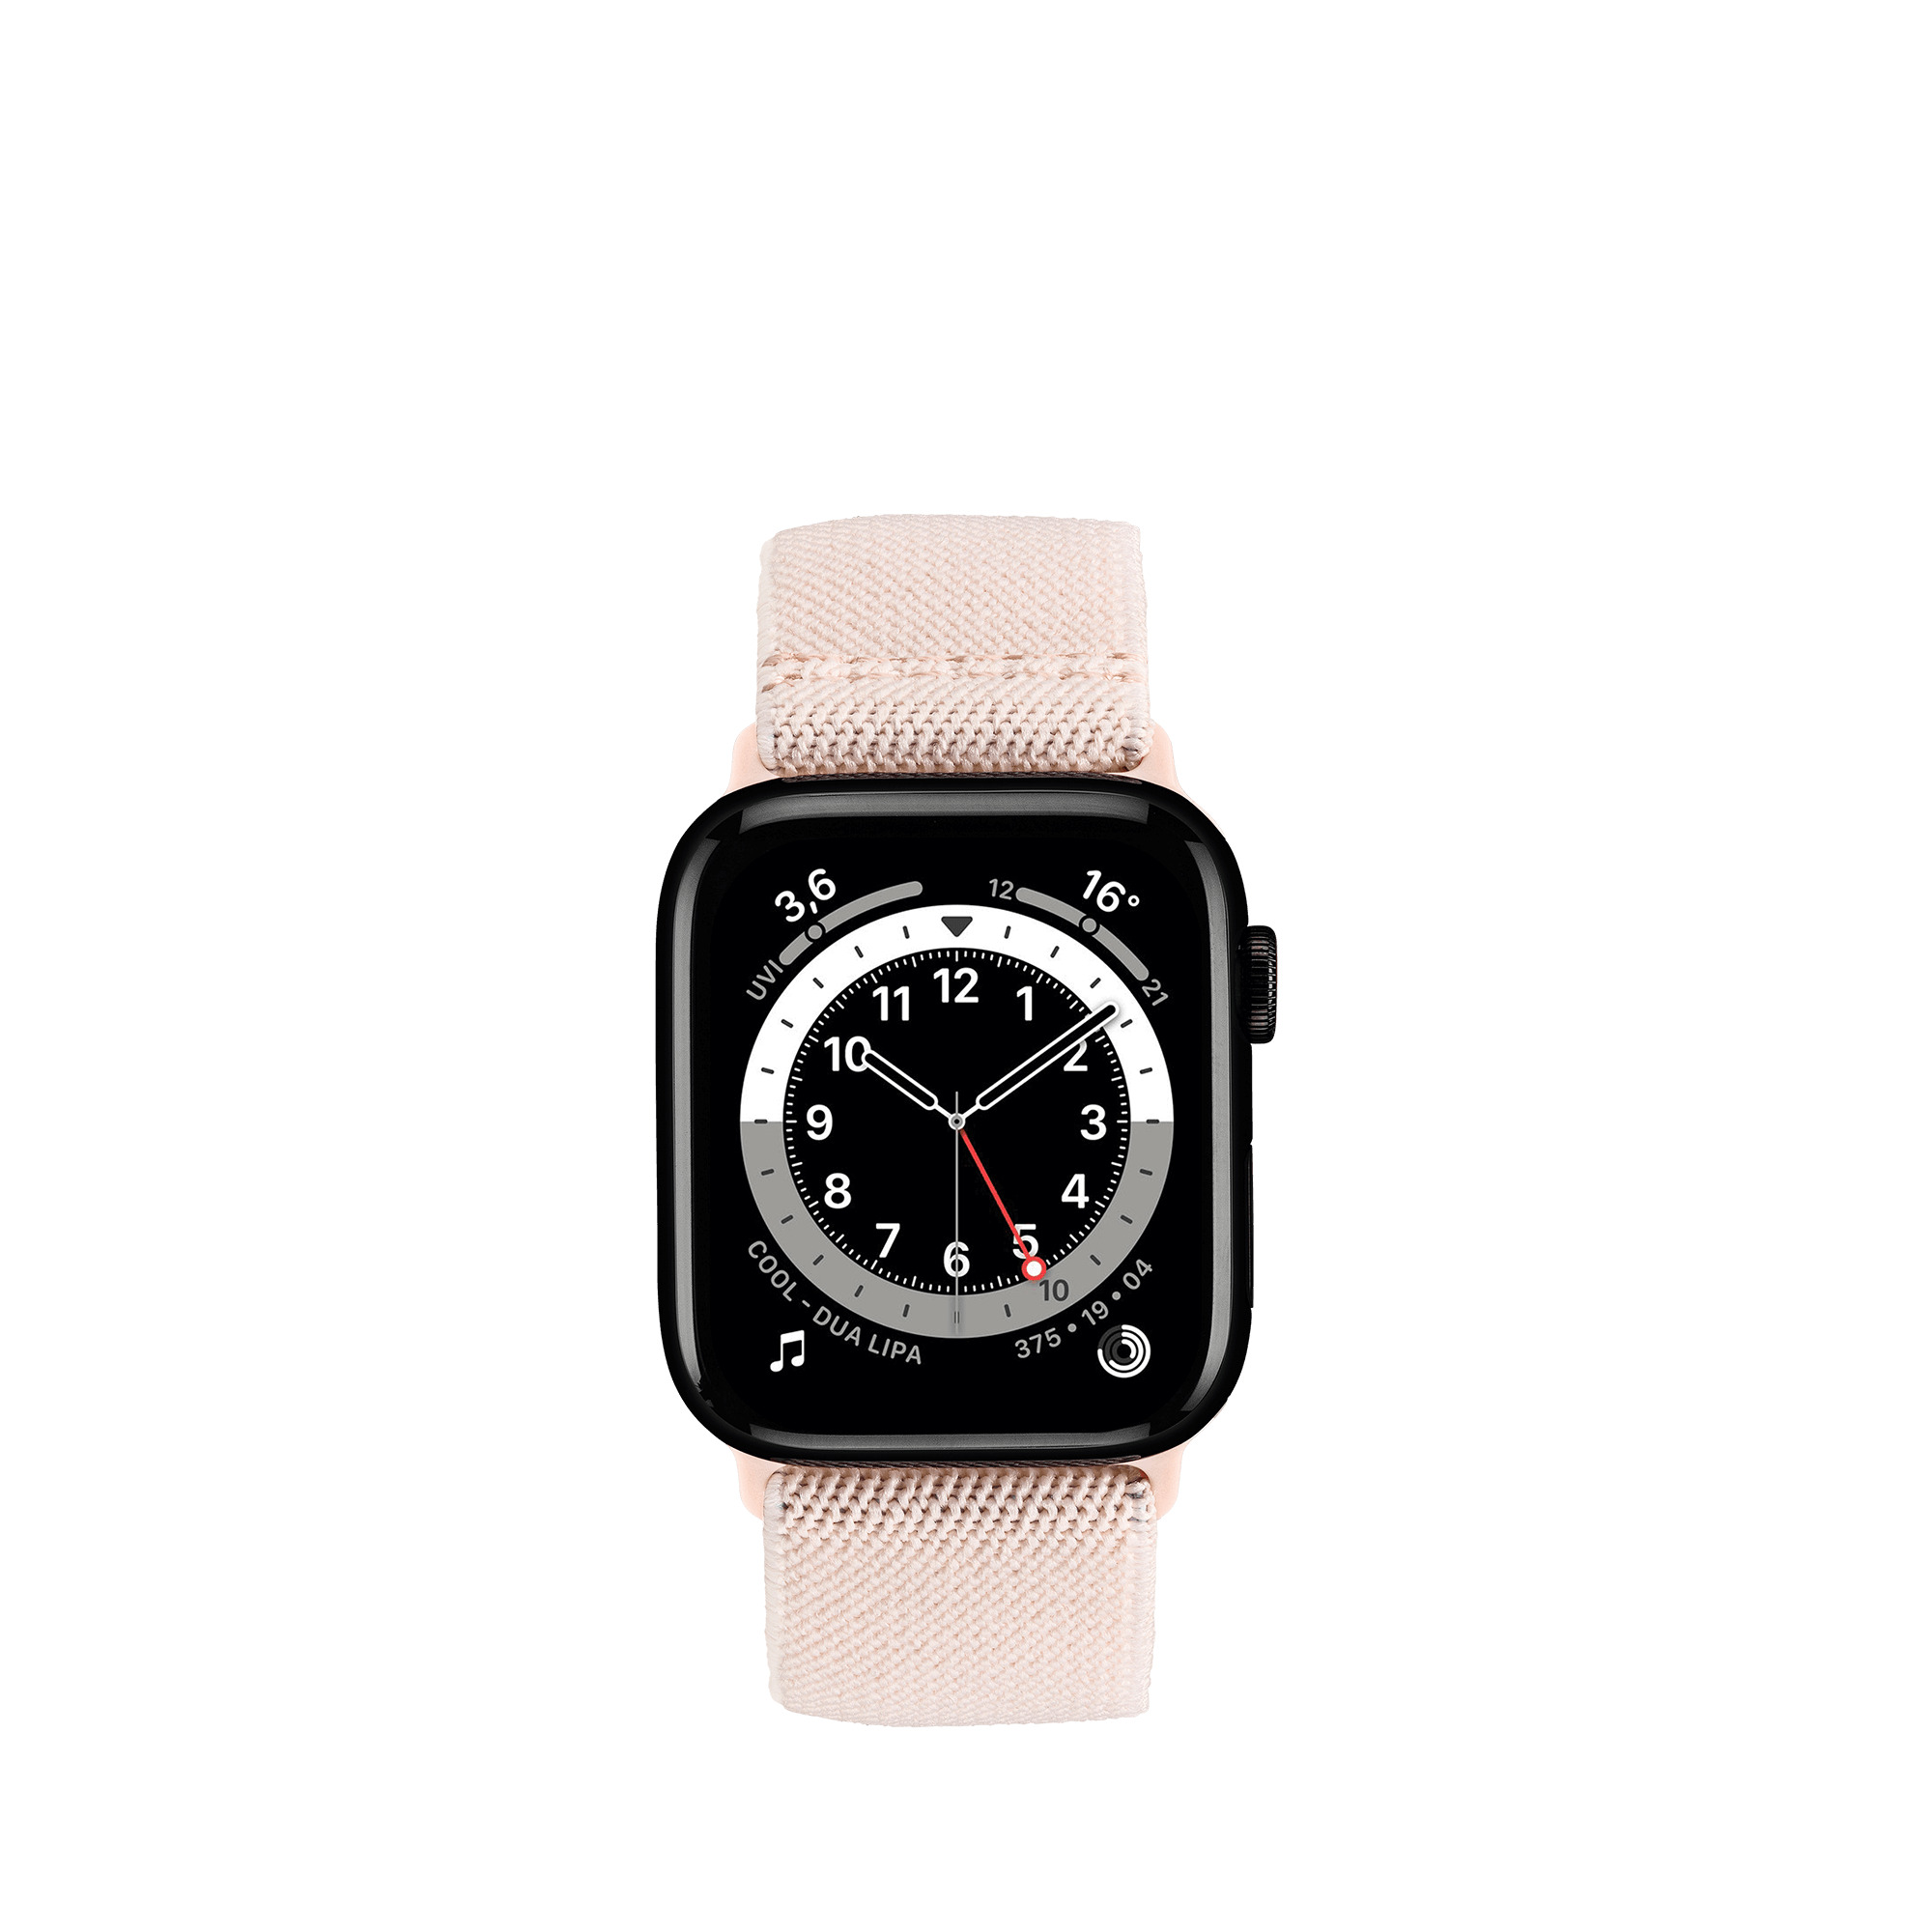 WatchBand Flex Smartwatch